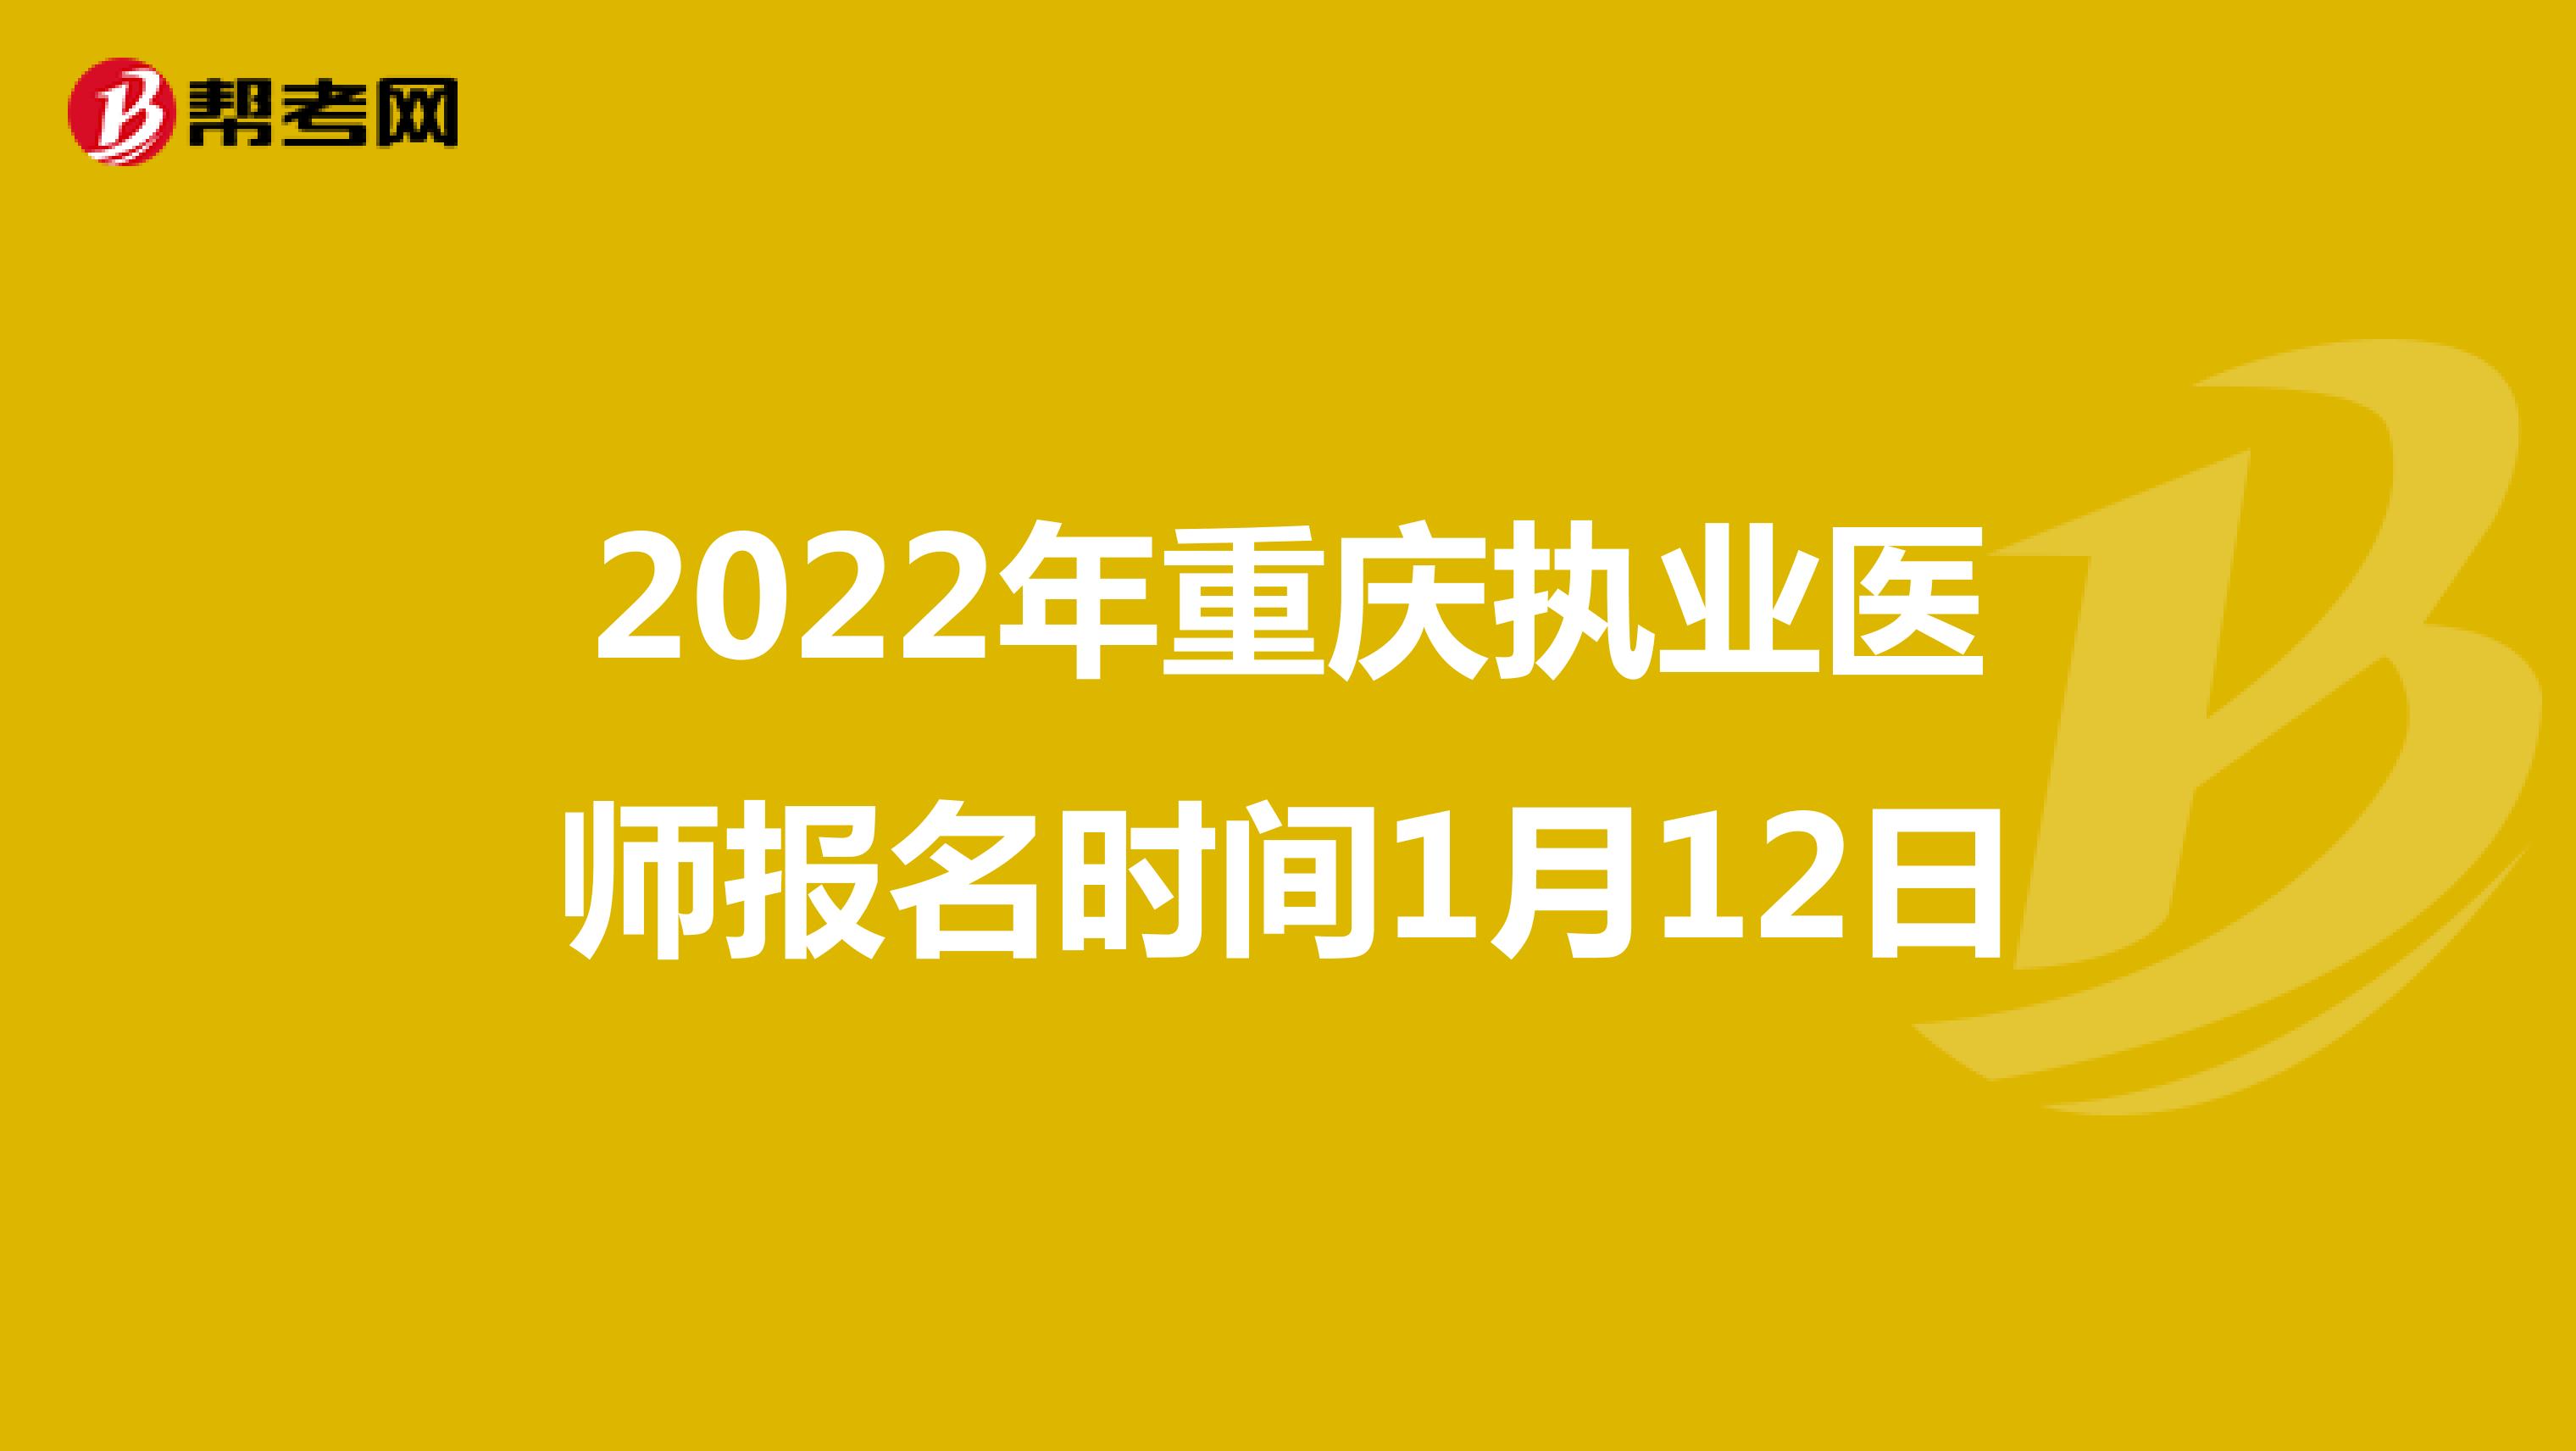 2022年重庆执业医师报名时间1月12日